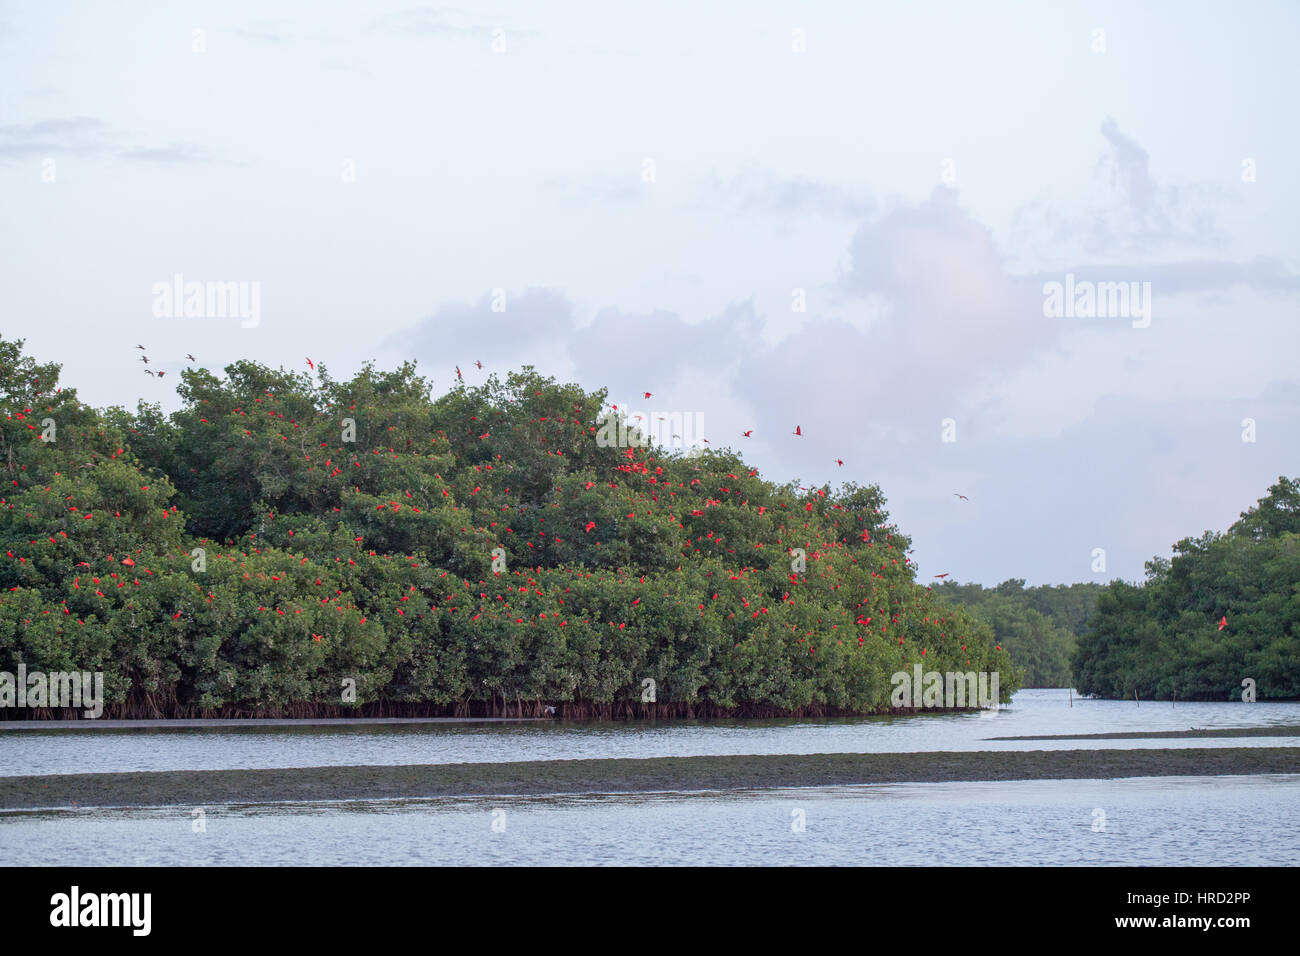 Ibis rouge (Eudocimus ruber). En vol de nuit, sites de repos un parmi les mangroves marécageuses Caroni. La Trinité. Des Caraïbes. West Indies. Banque D'Images